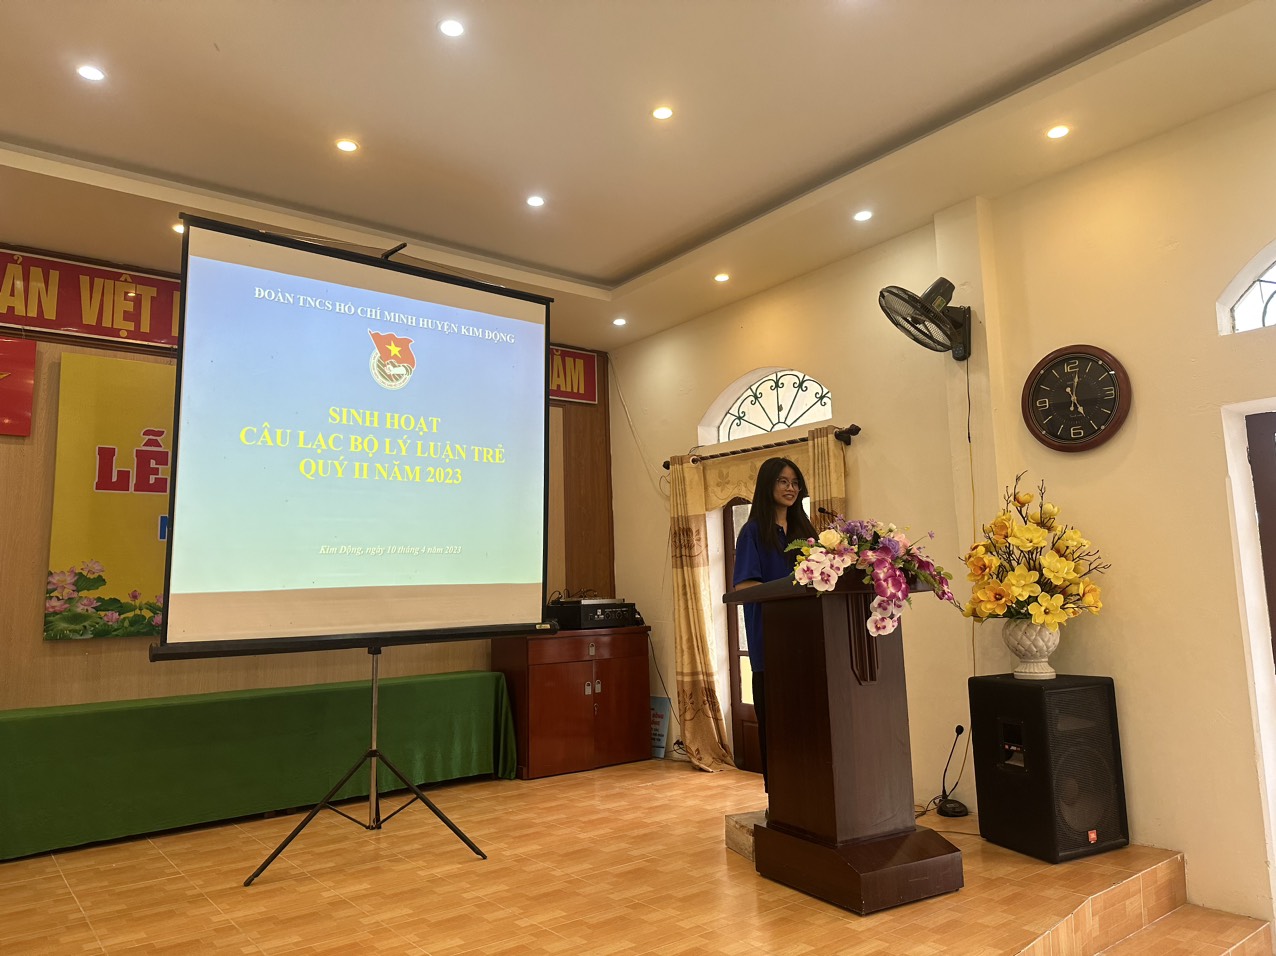 Câu lạc bộ Lý luận trẻ huyện Kim Động tổ chức buổi sinh hoạt Câu lạc bộ Lý luận trẻ Quý II năm 2023